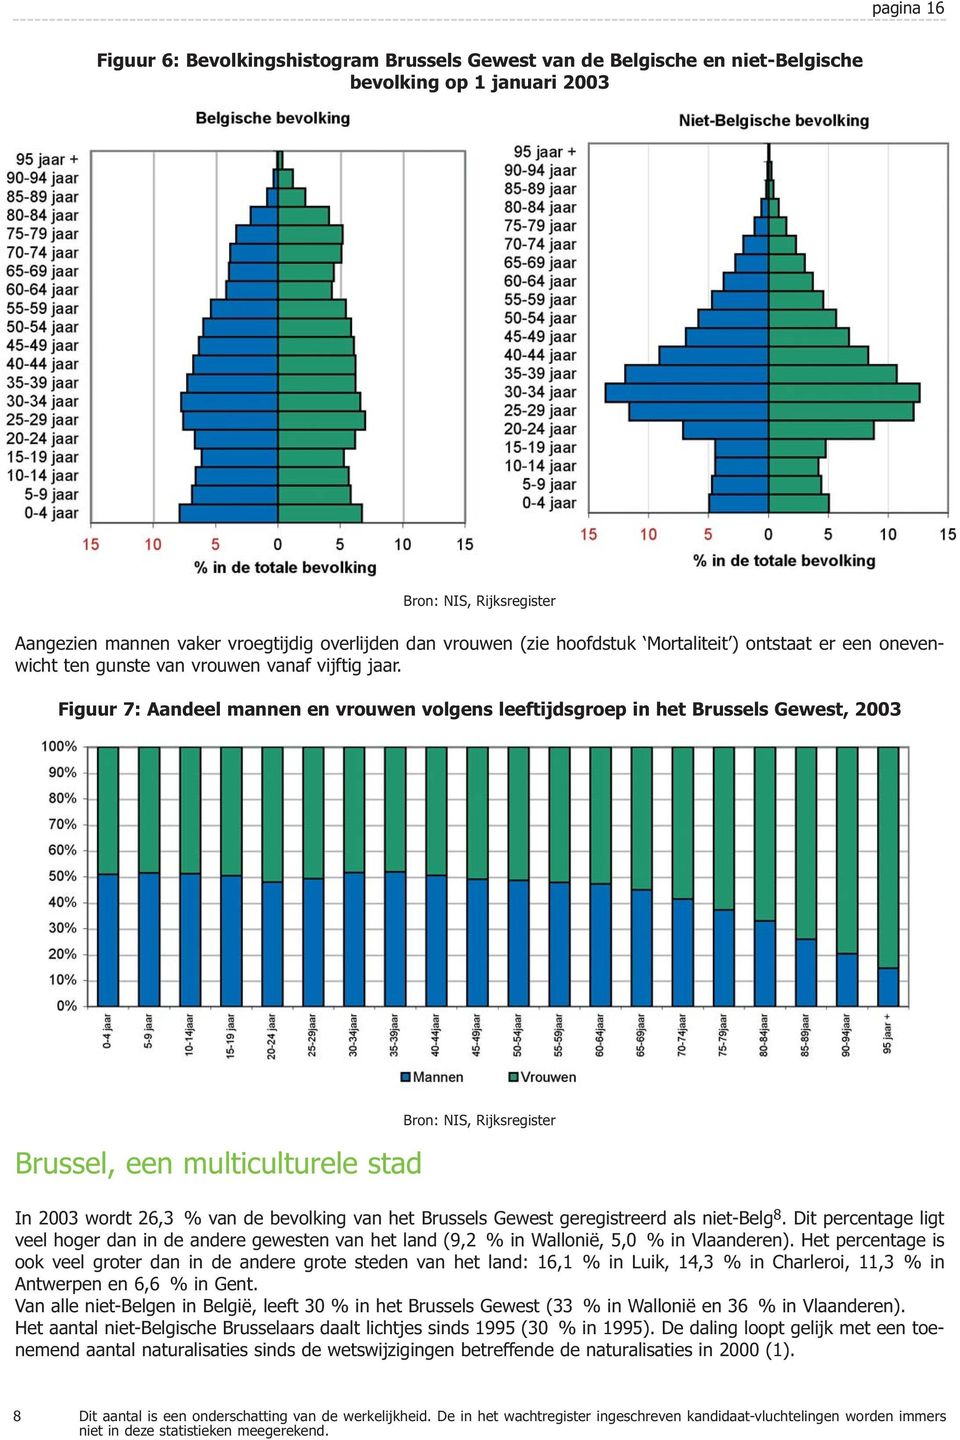 Figuur 7: Aandeel mannen en vrouwen volgens leeftijdsgroep in het Brussels Gewest, 2003 Brussel, een multiculturele stad Bron: NIS, Rijksregister In 2003 wordt 26,3 % van de bevolking van het